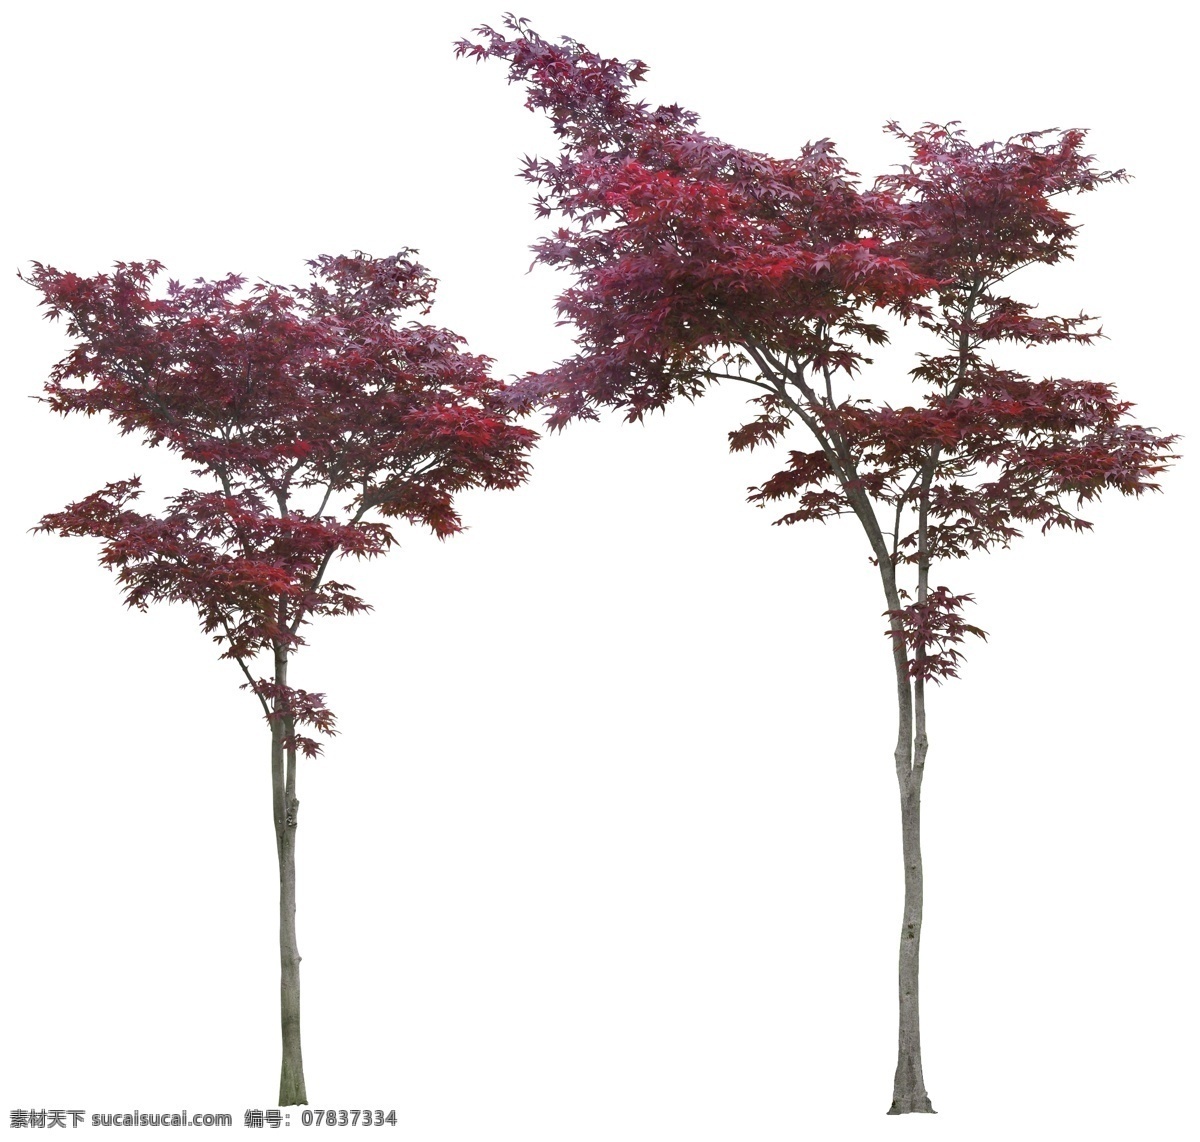 红叶 树 红叶树 红叶树素材 红叶树psd 乔木 树木 植物素材 psd素材 植物 绿化素材 环境设计 景观设计